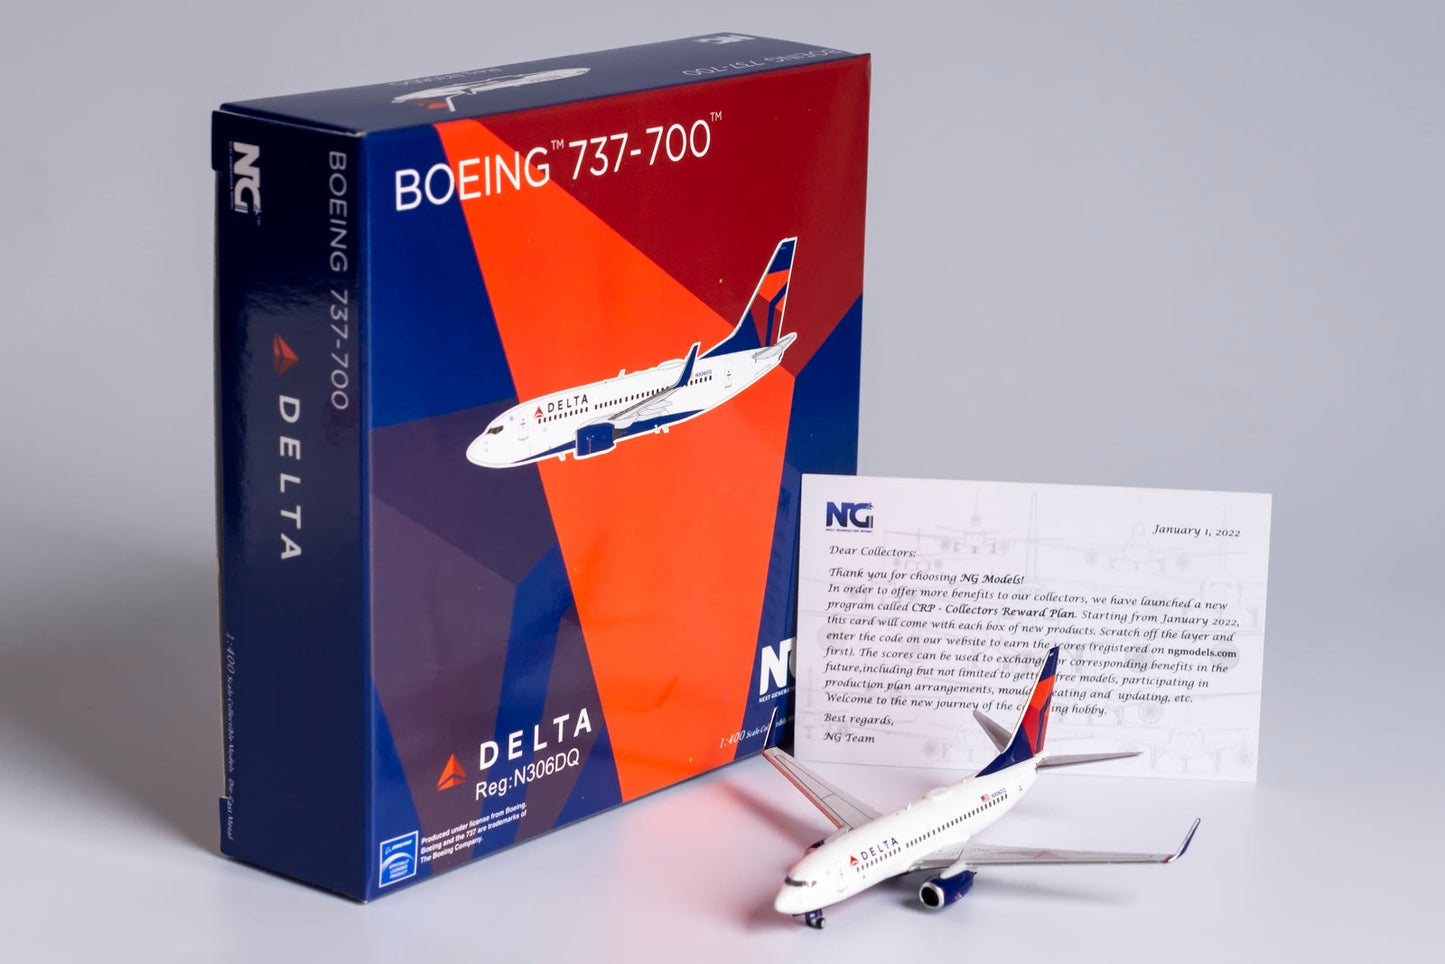 1/400 Delta Airlines B 737-700/w NG Models 77019 *Broken front landing gear door*